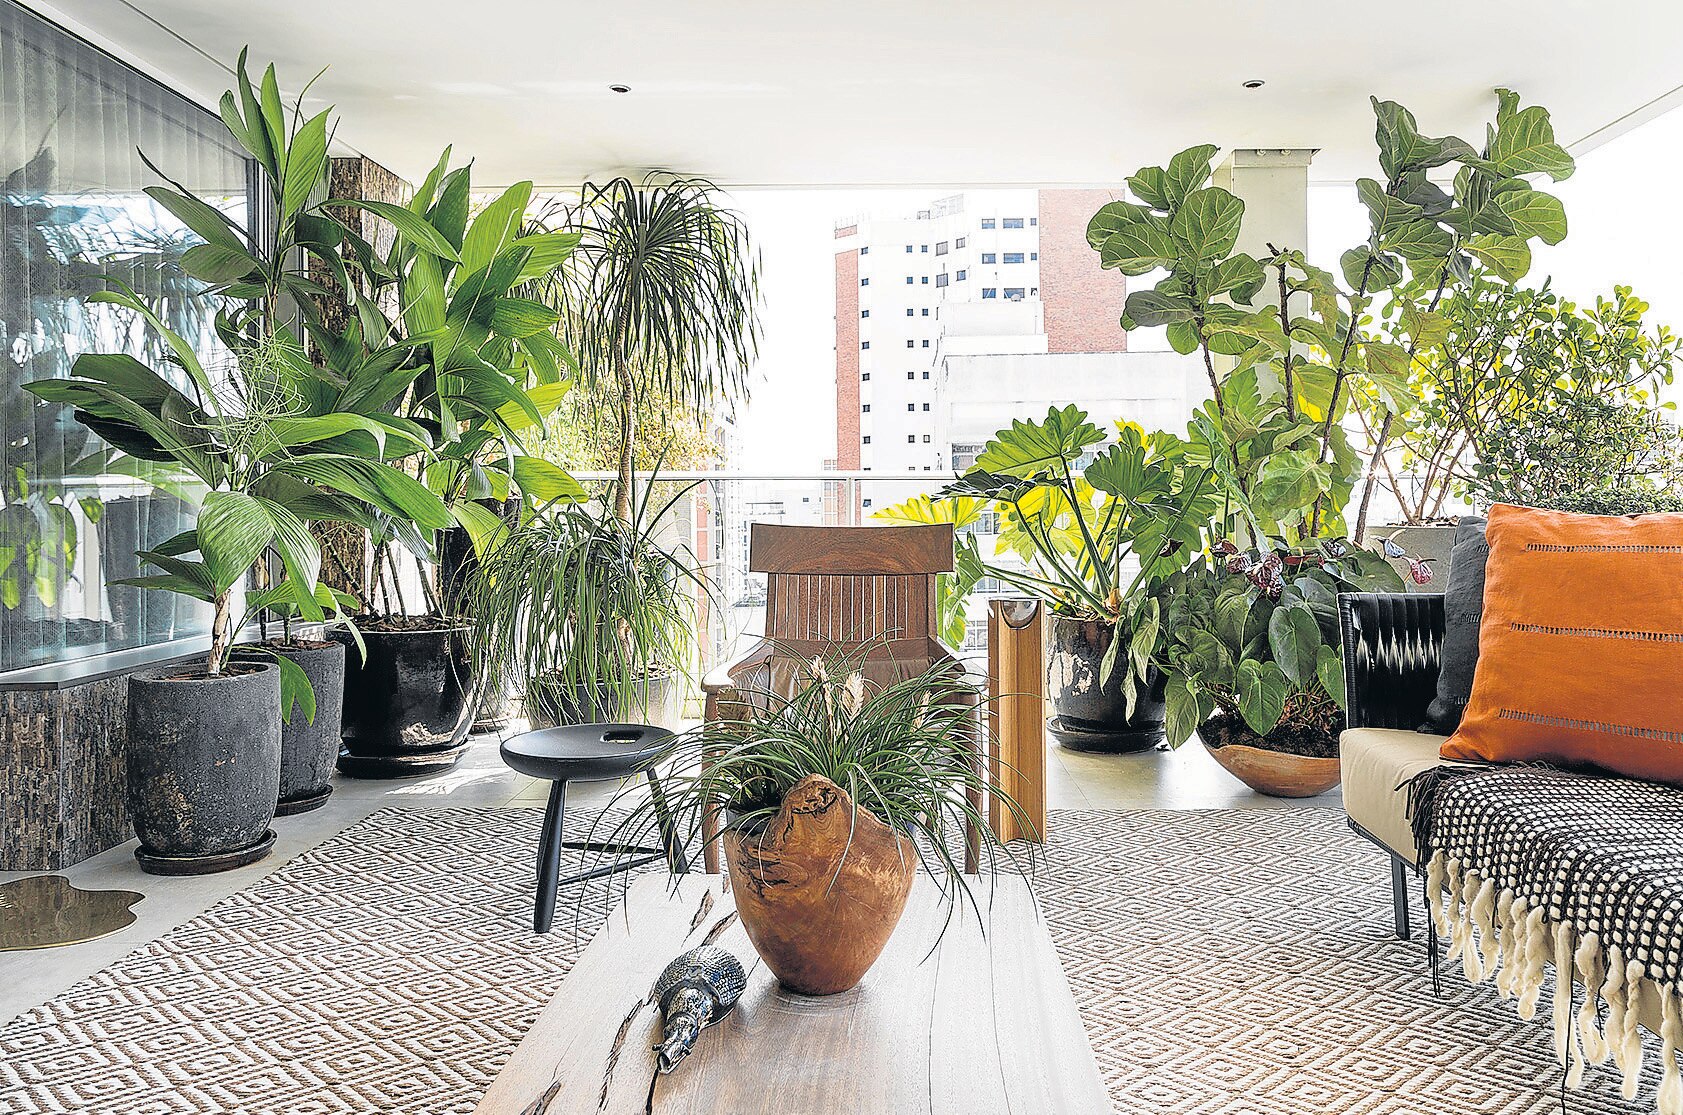 Plantas tropicais podem se adaptar a ambientes internos da casa - Estadão